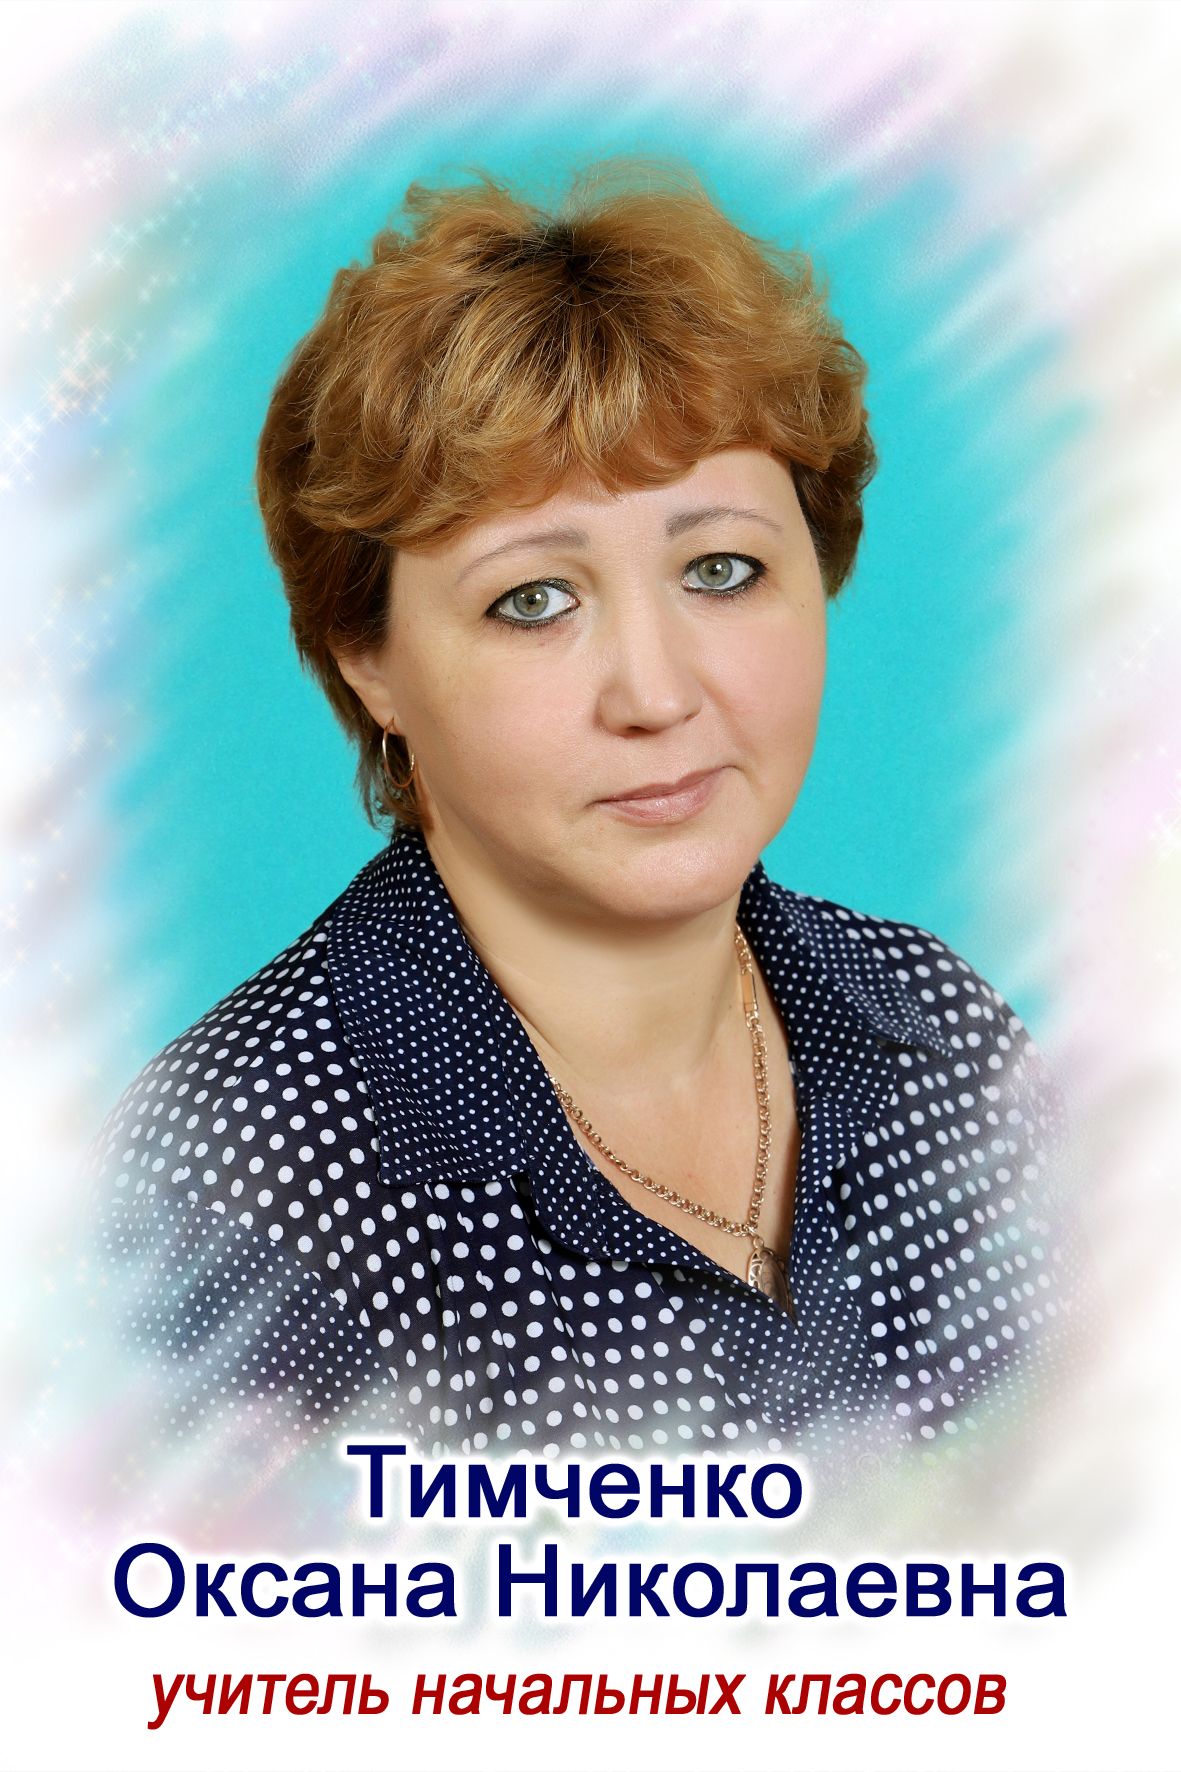 Тимченко Оксана Николаевна.